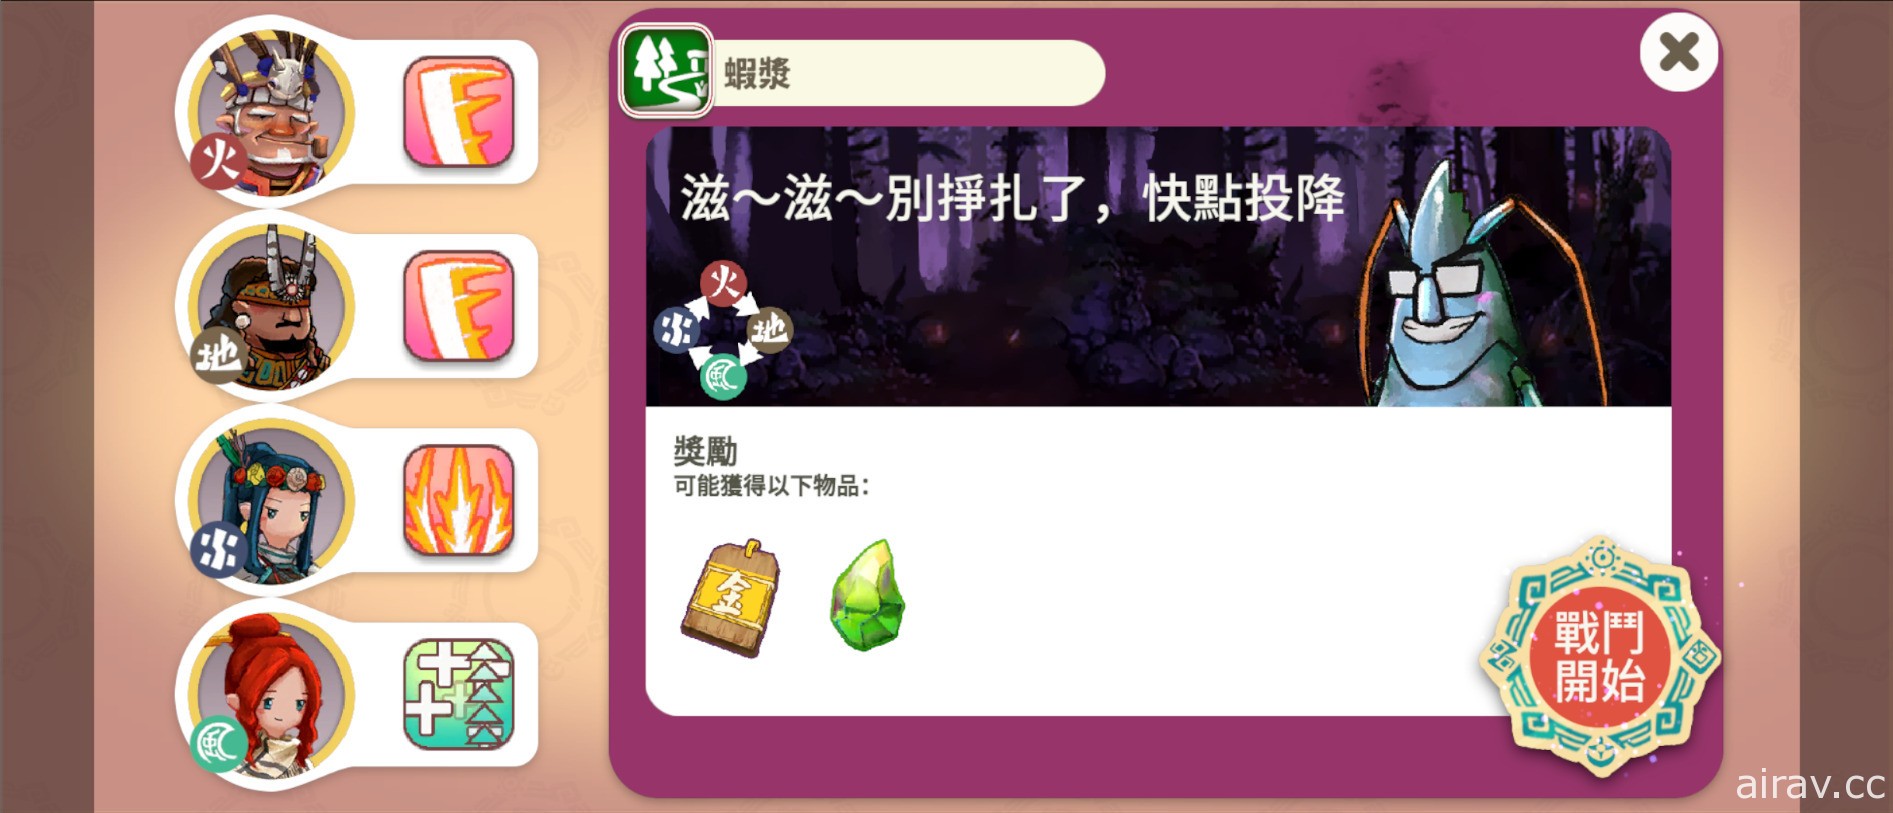 溫泉主題放置經營遊戲《映泉鄉》開放下載 融入多項台灣特色文化